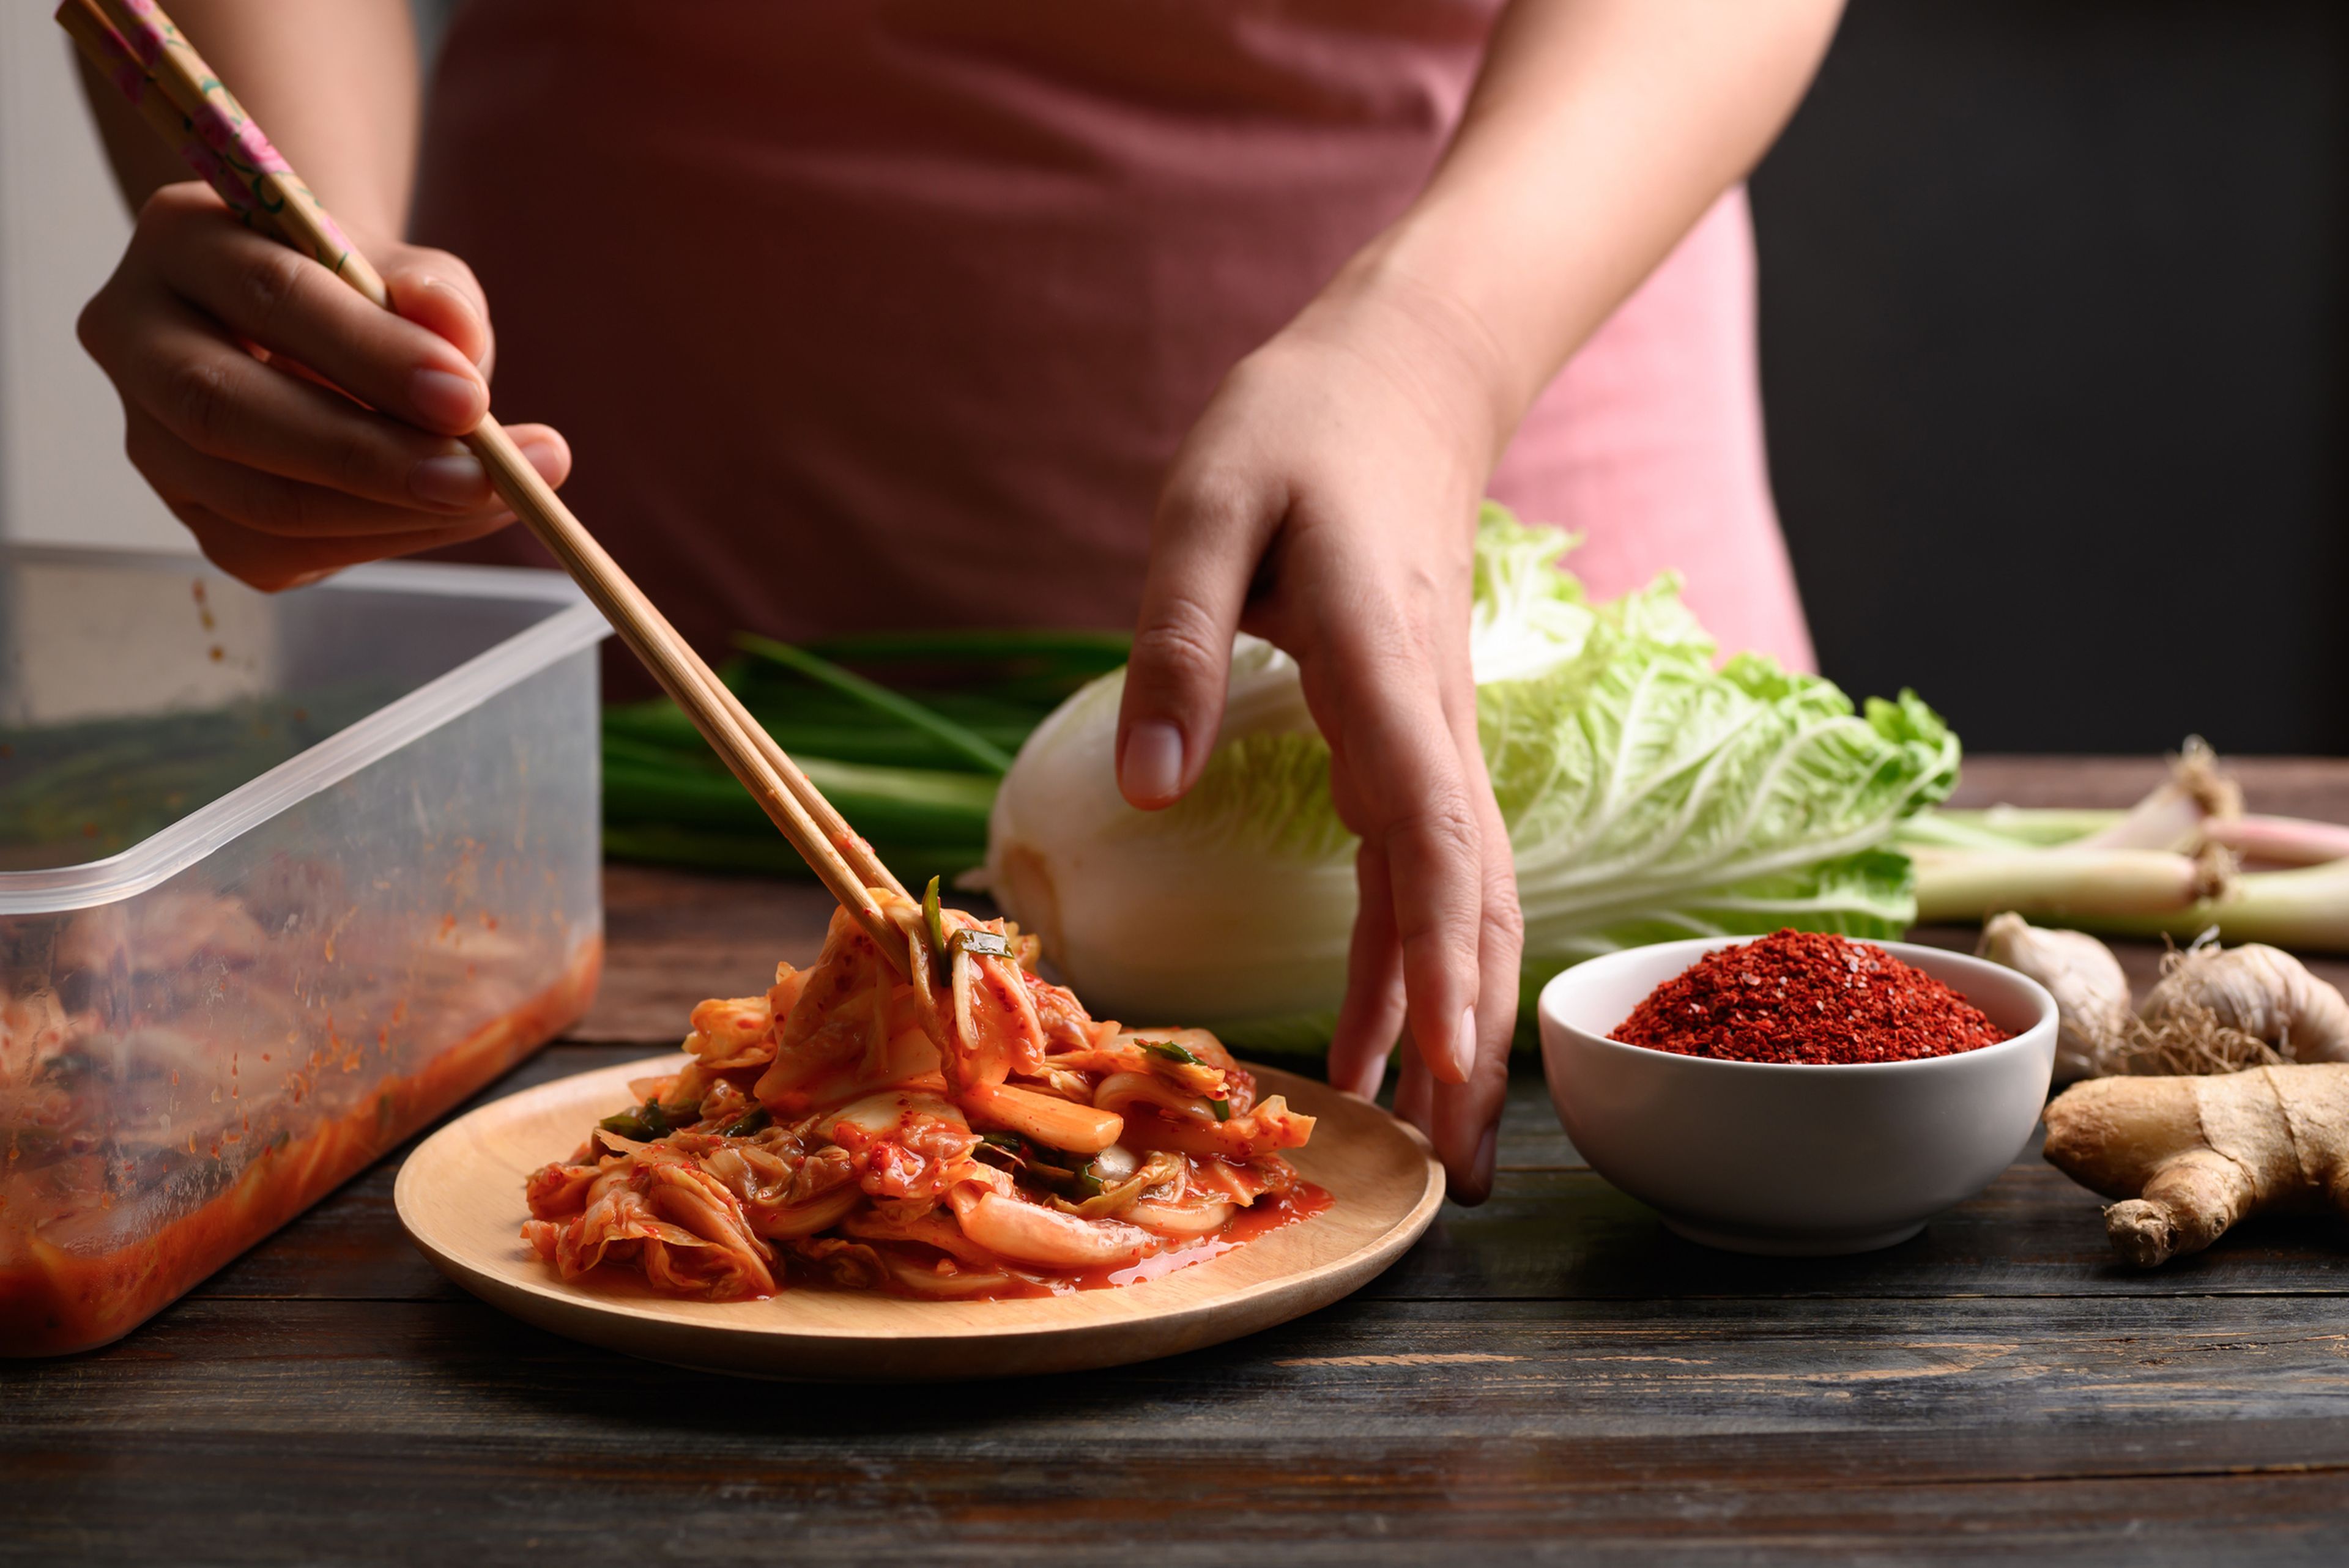 Puedes preparar kimchi en casa por un precio muy económico y conservarlo durante semanas.